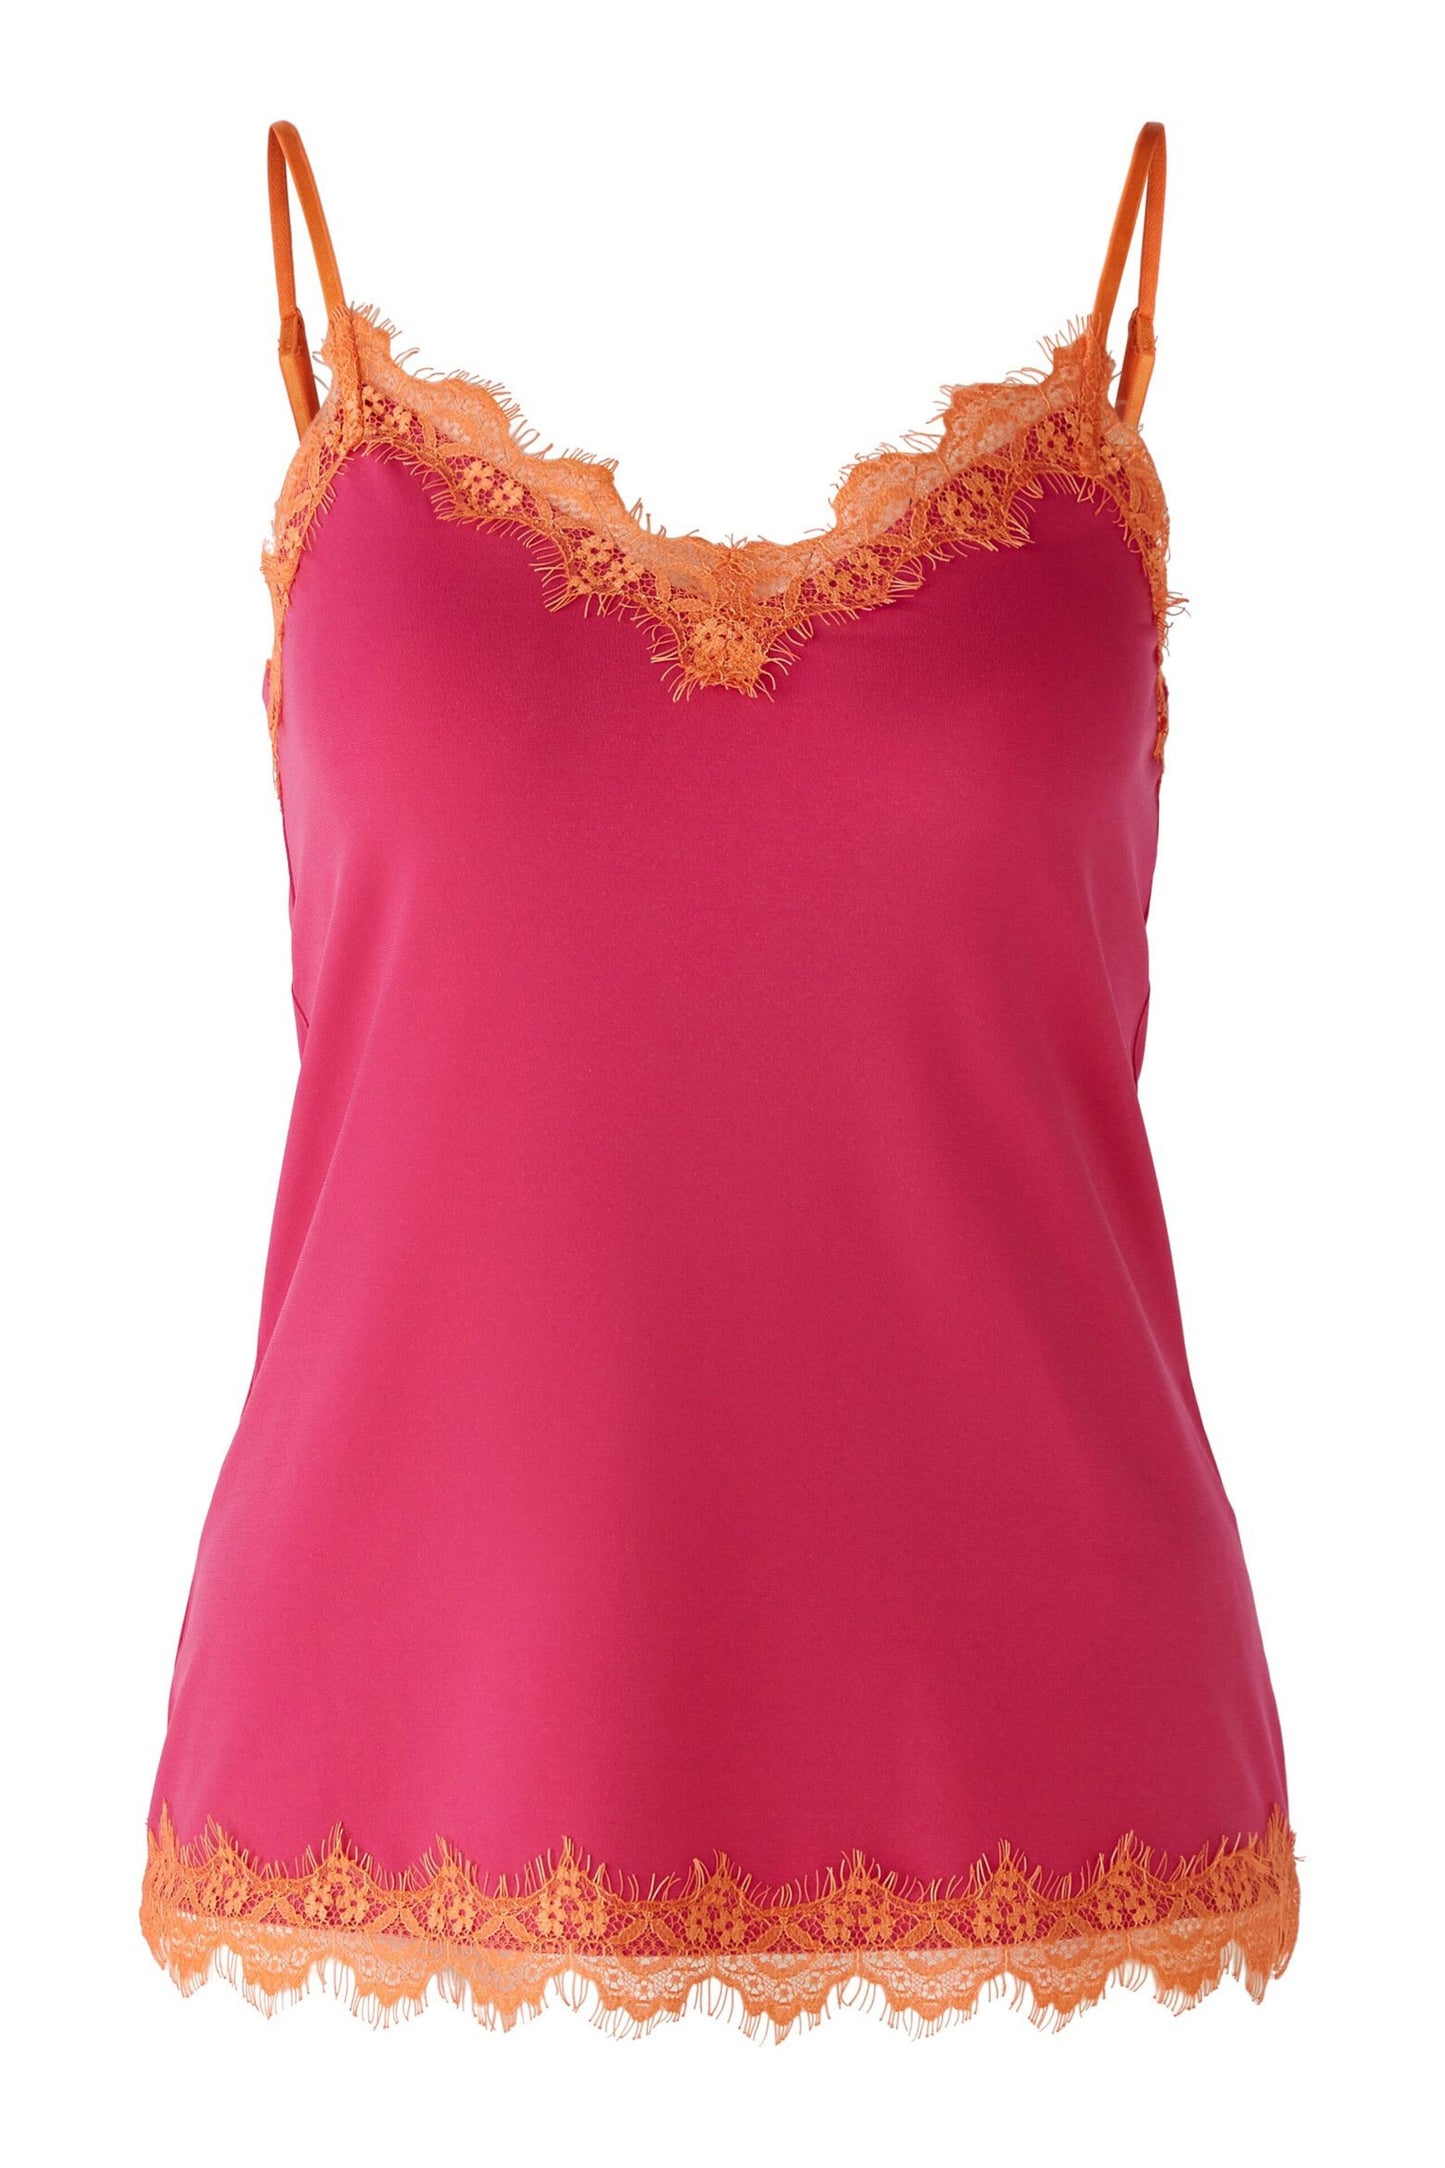 Oui 87194 pink/orange  lace trim camisole